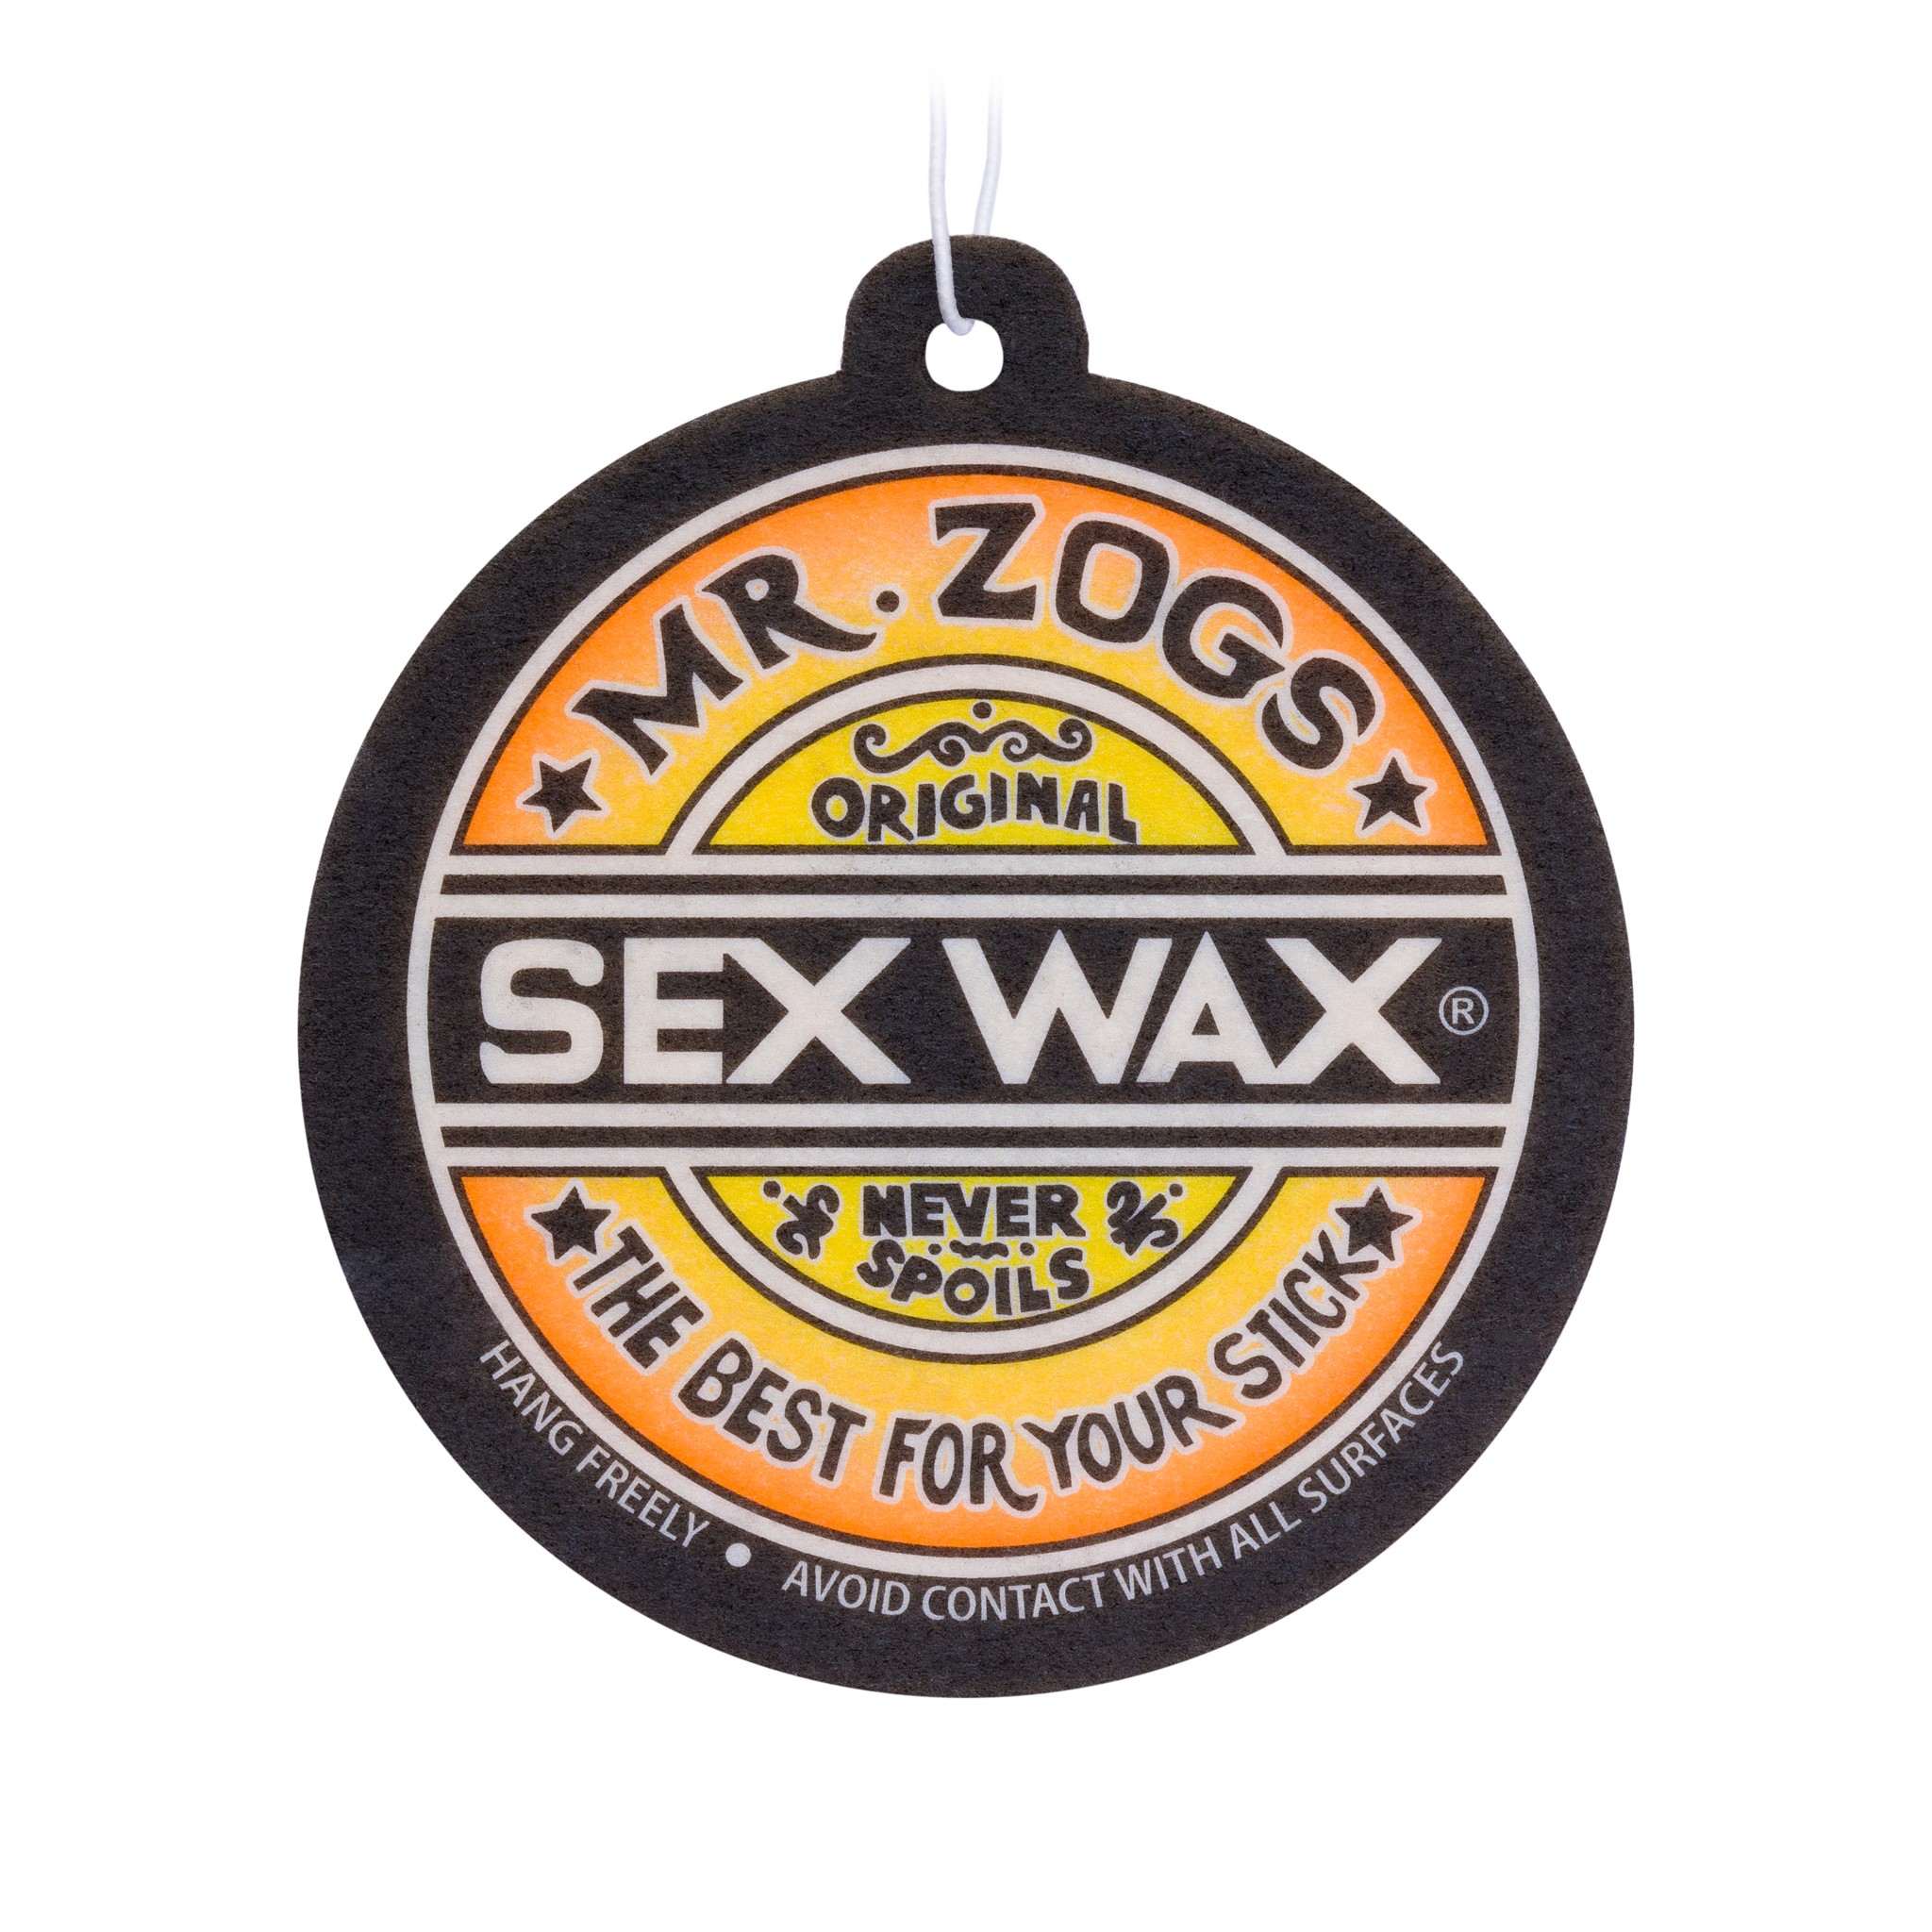 Sexwax Sex Wax Surf Wax Original Tropical Water 3 Pack